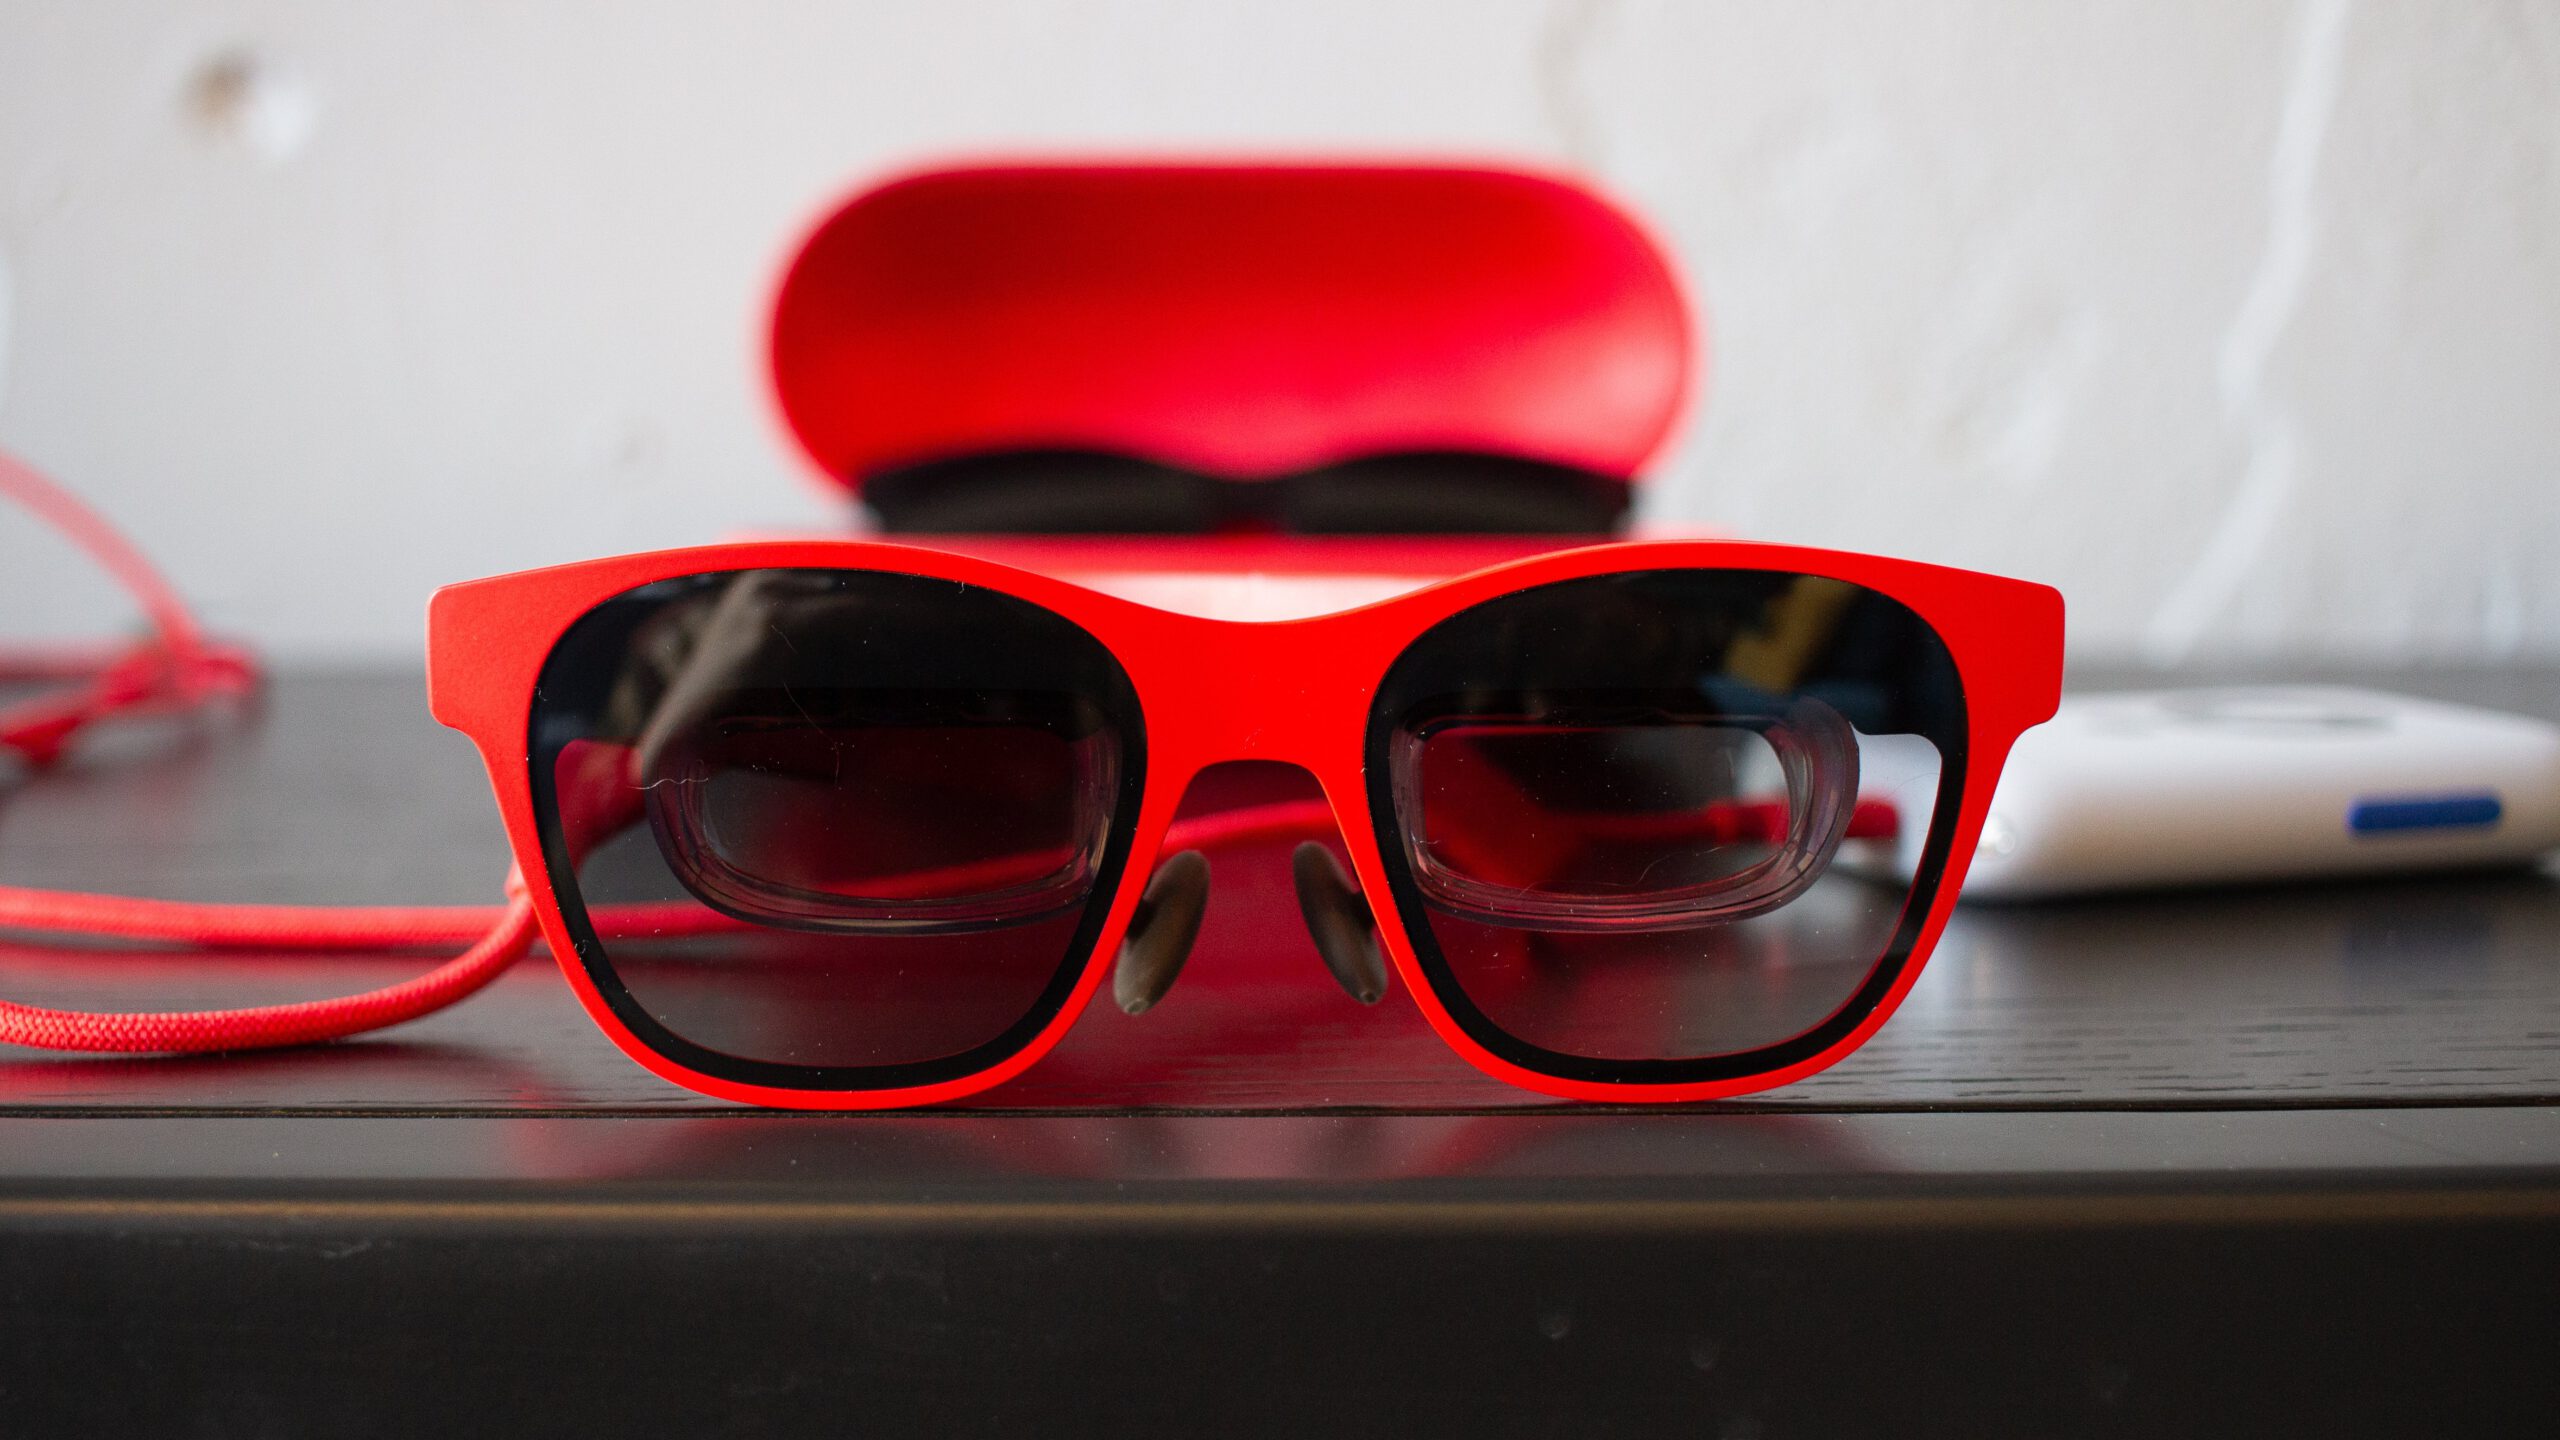 red AR glasses with inner screen lenses